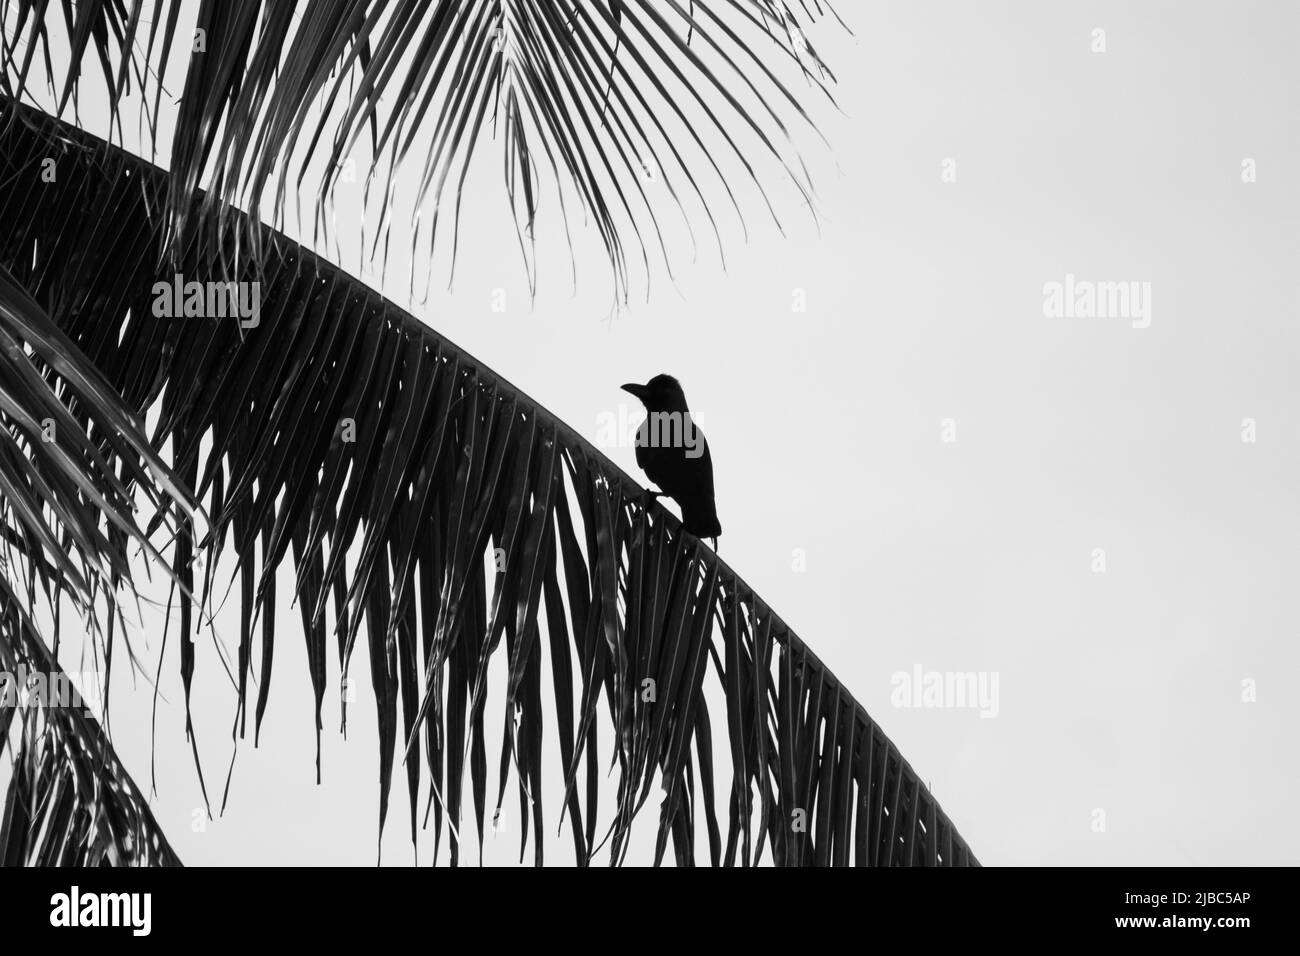 Au Sri Lanka près de Colombo, une maison de corbeau perche sur une grande branche d'un palmier mature. Banque D'Images